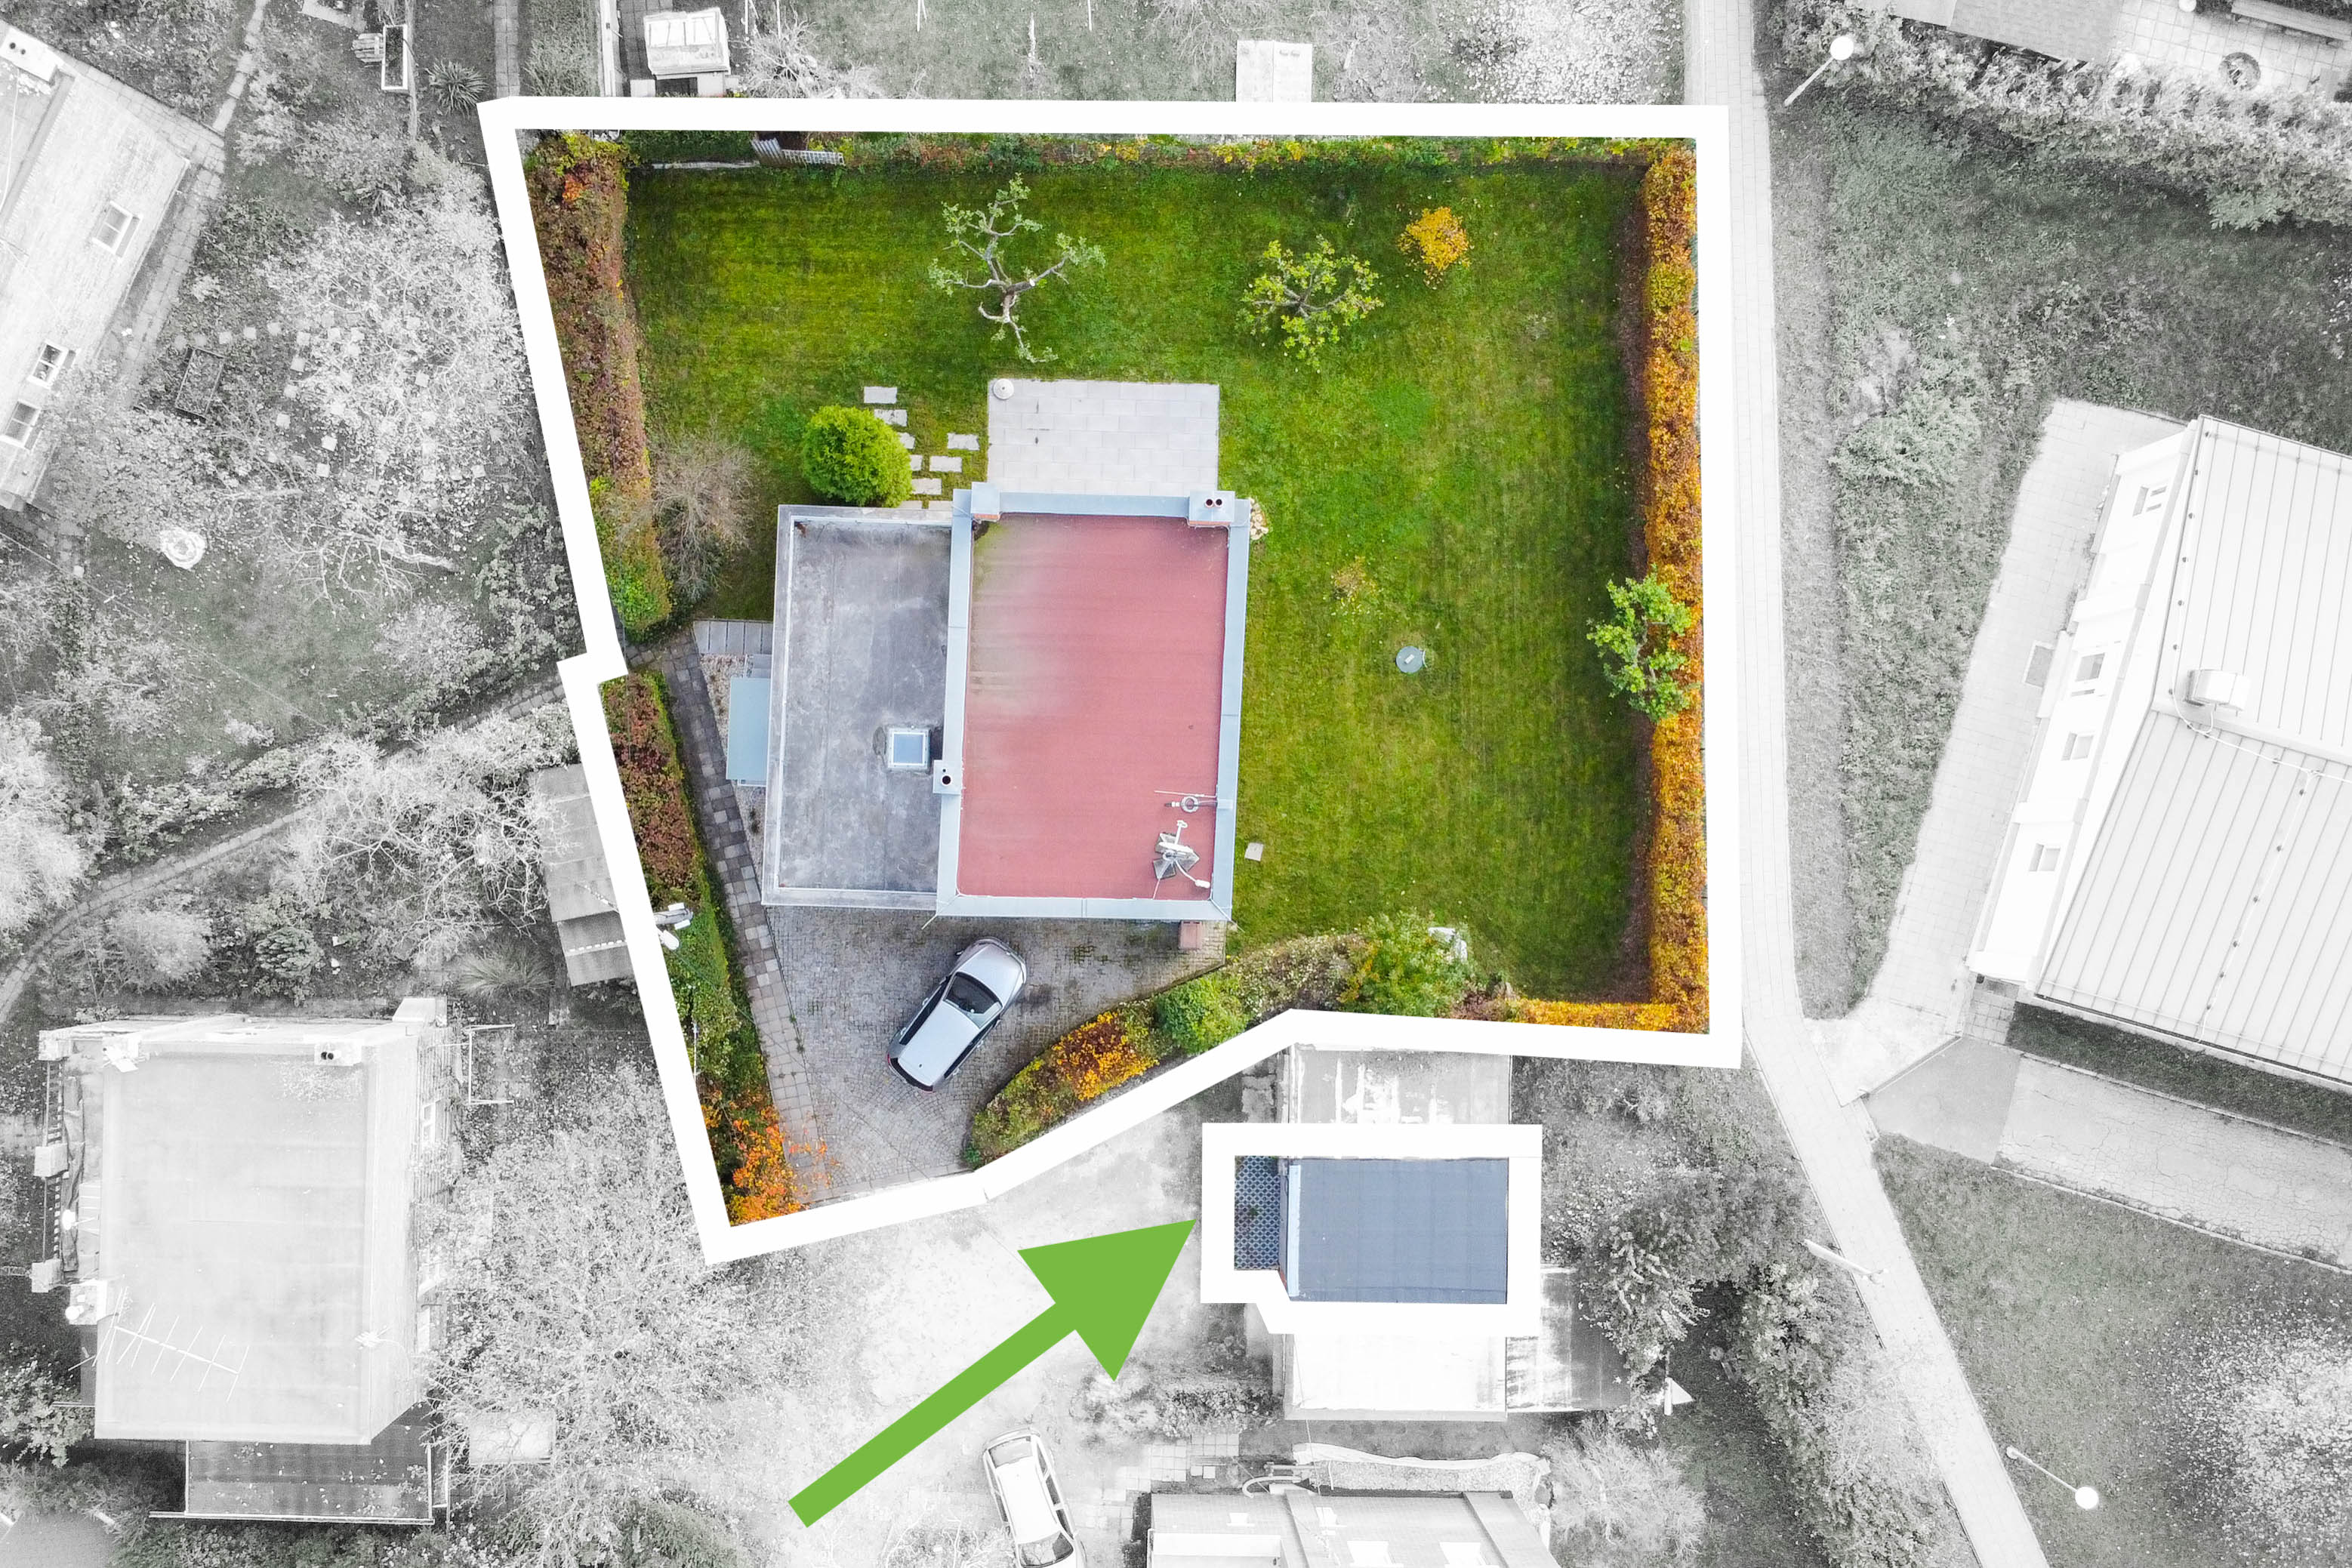 Baťovský jednodomek z dronu s vyznačením hranic pozemku